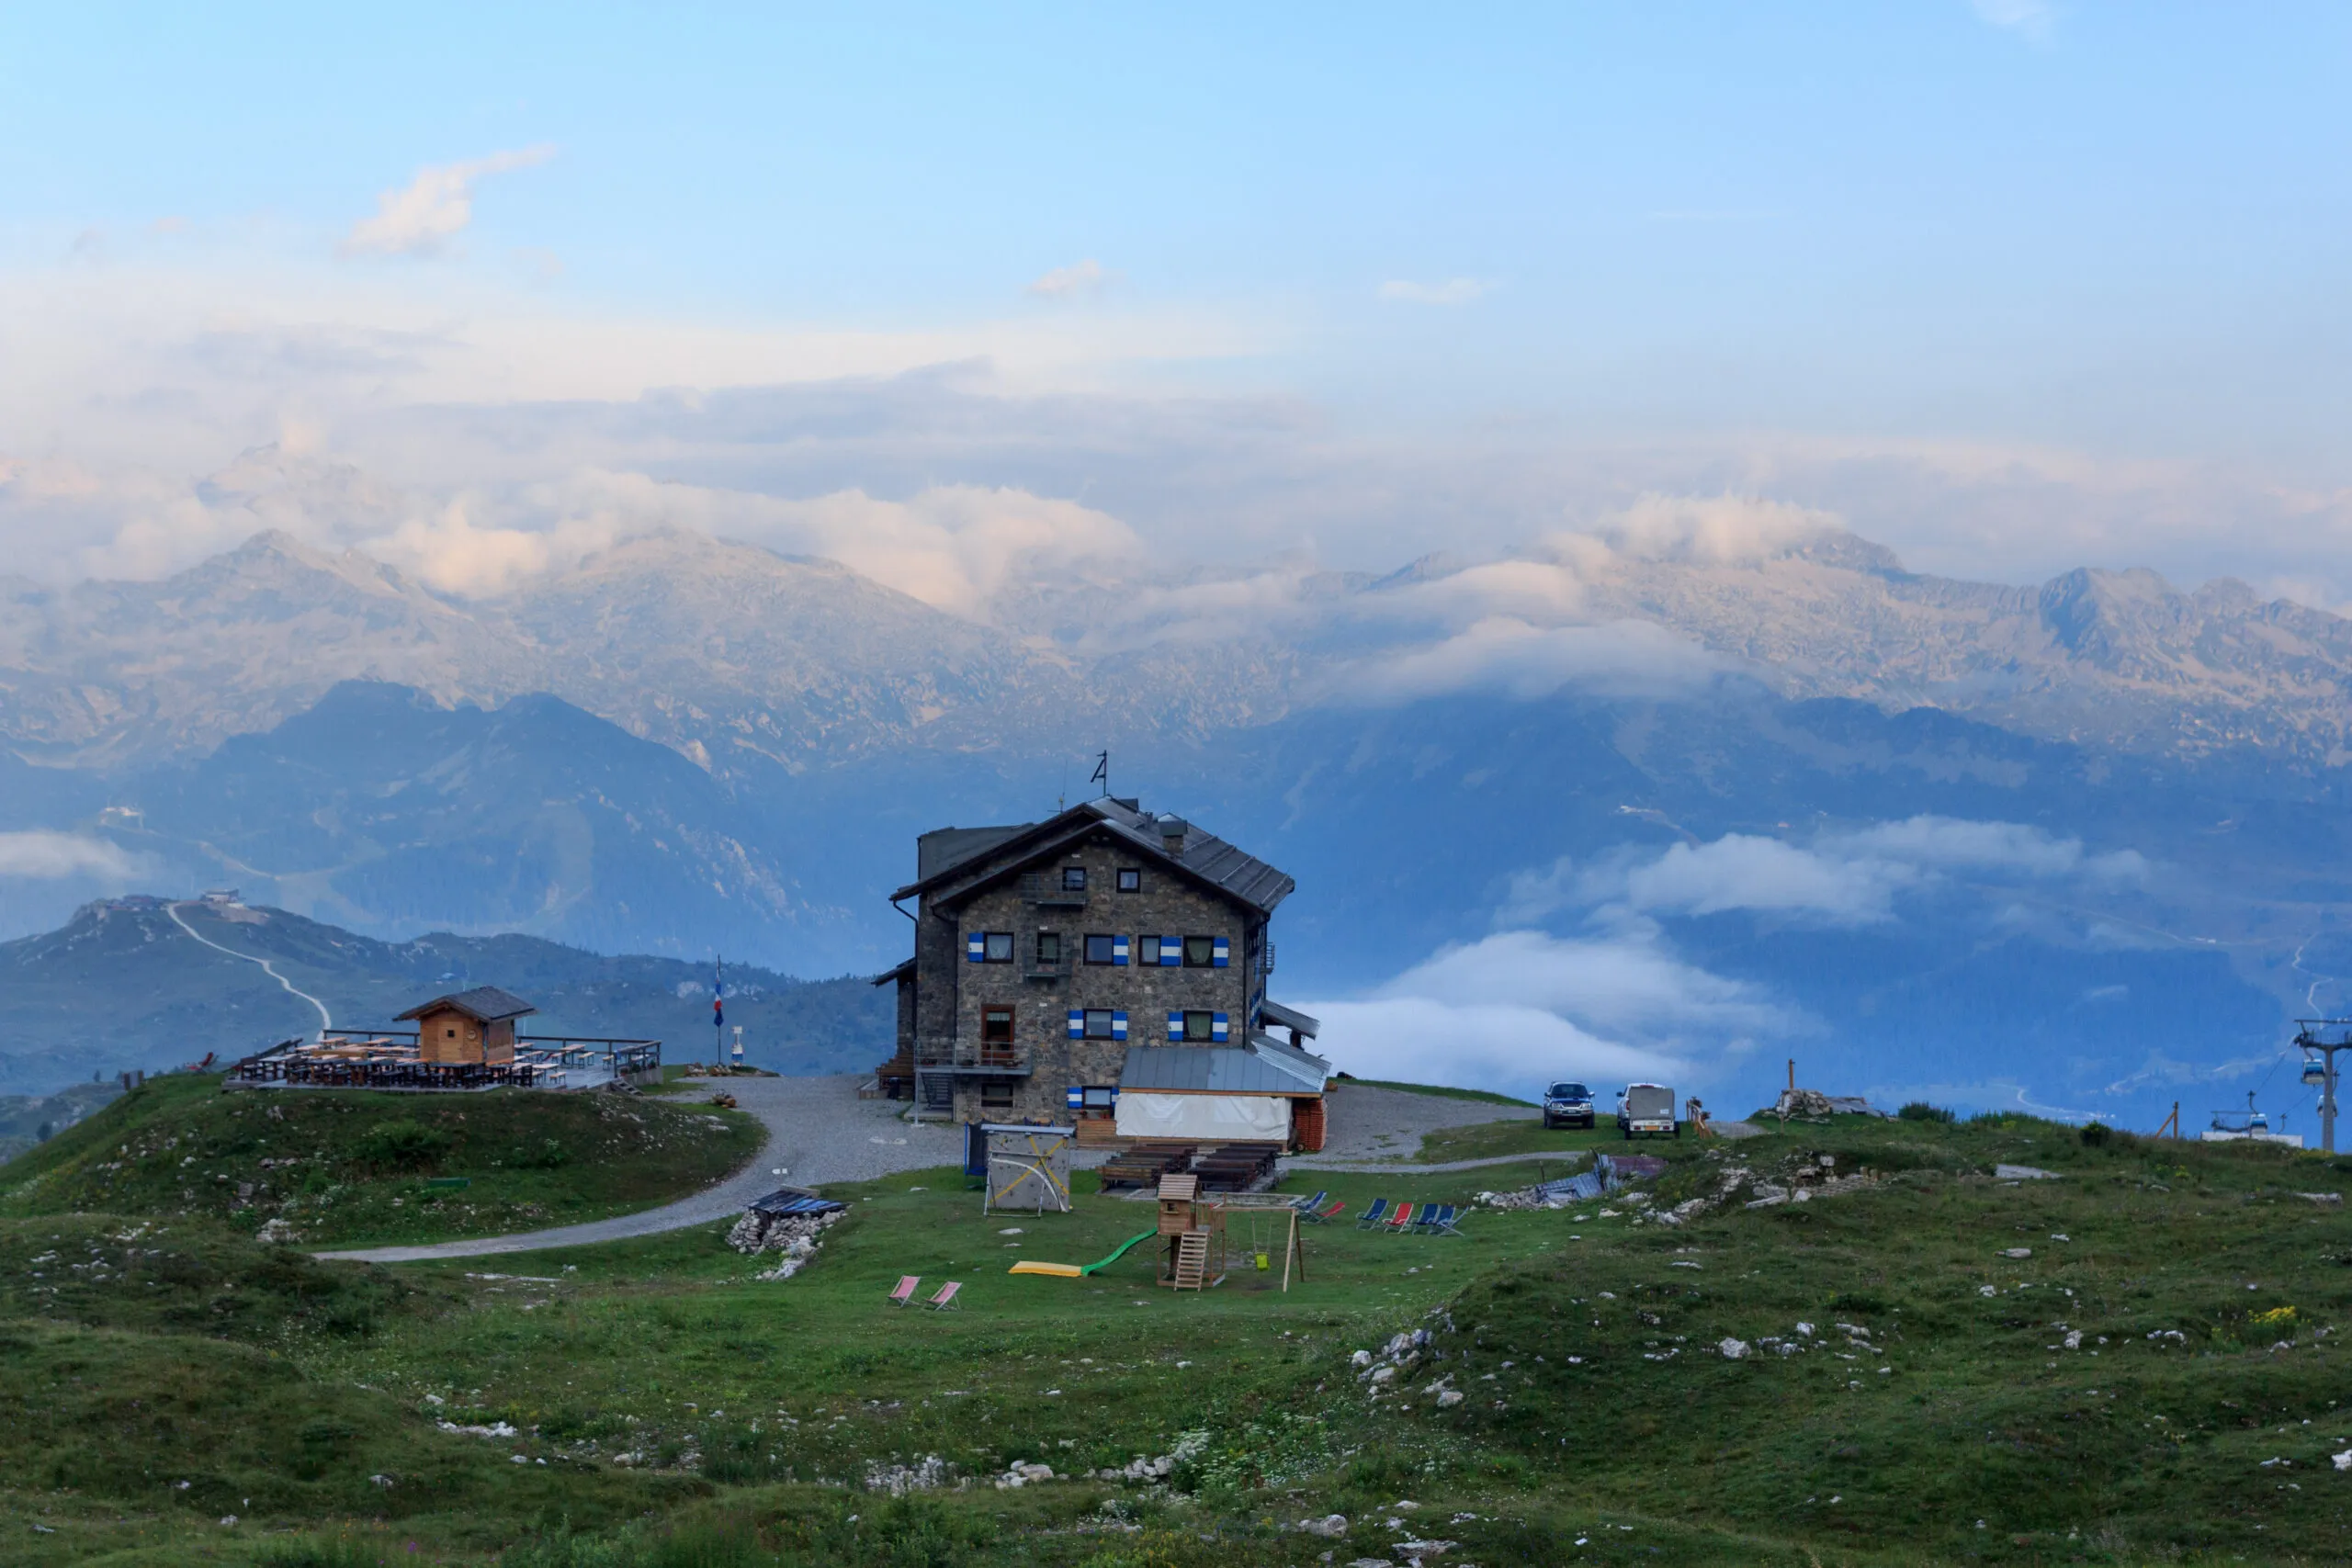 Berghütte Rifugio Graffer und Alpenpanorama der Adamello-Presanella-Alpen von den Brenta-Dolomiten in Italien aus gesehen